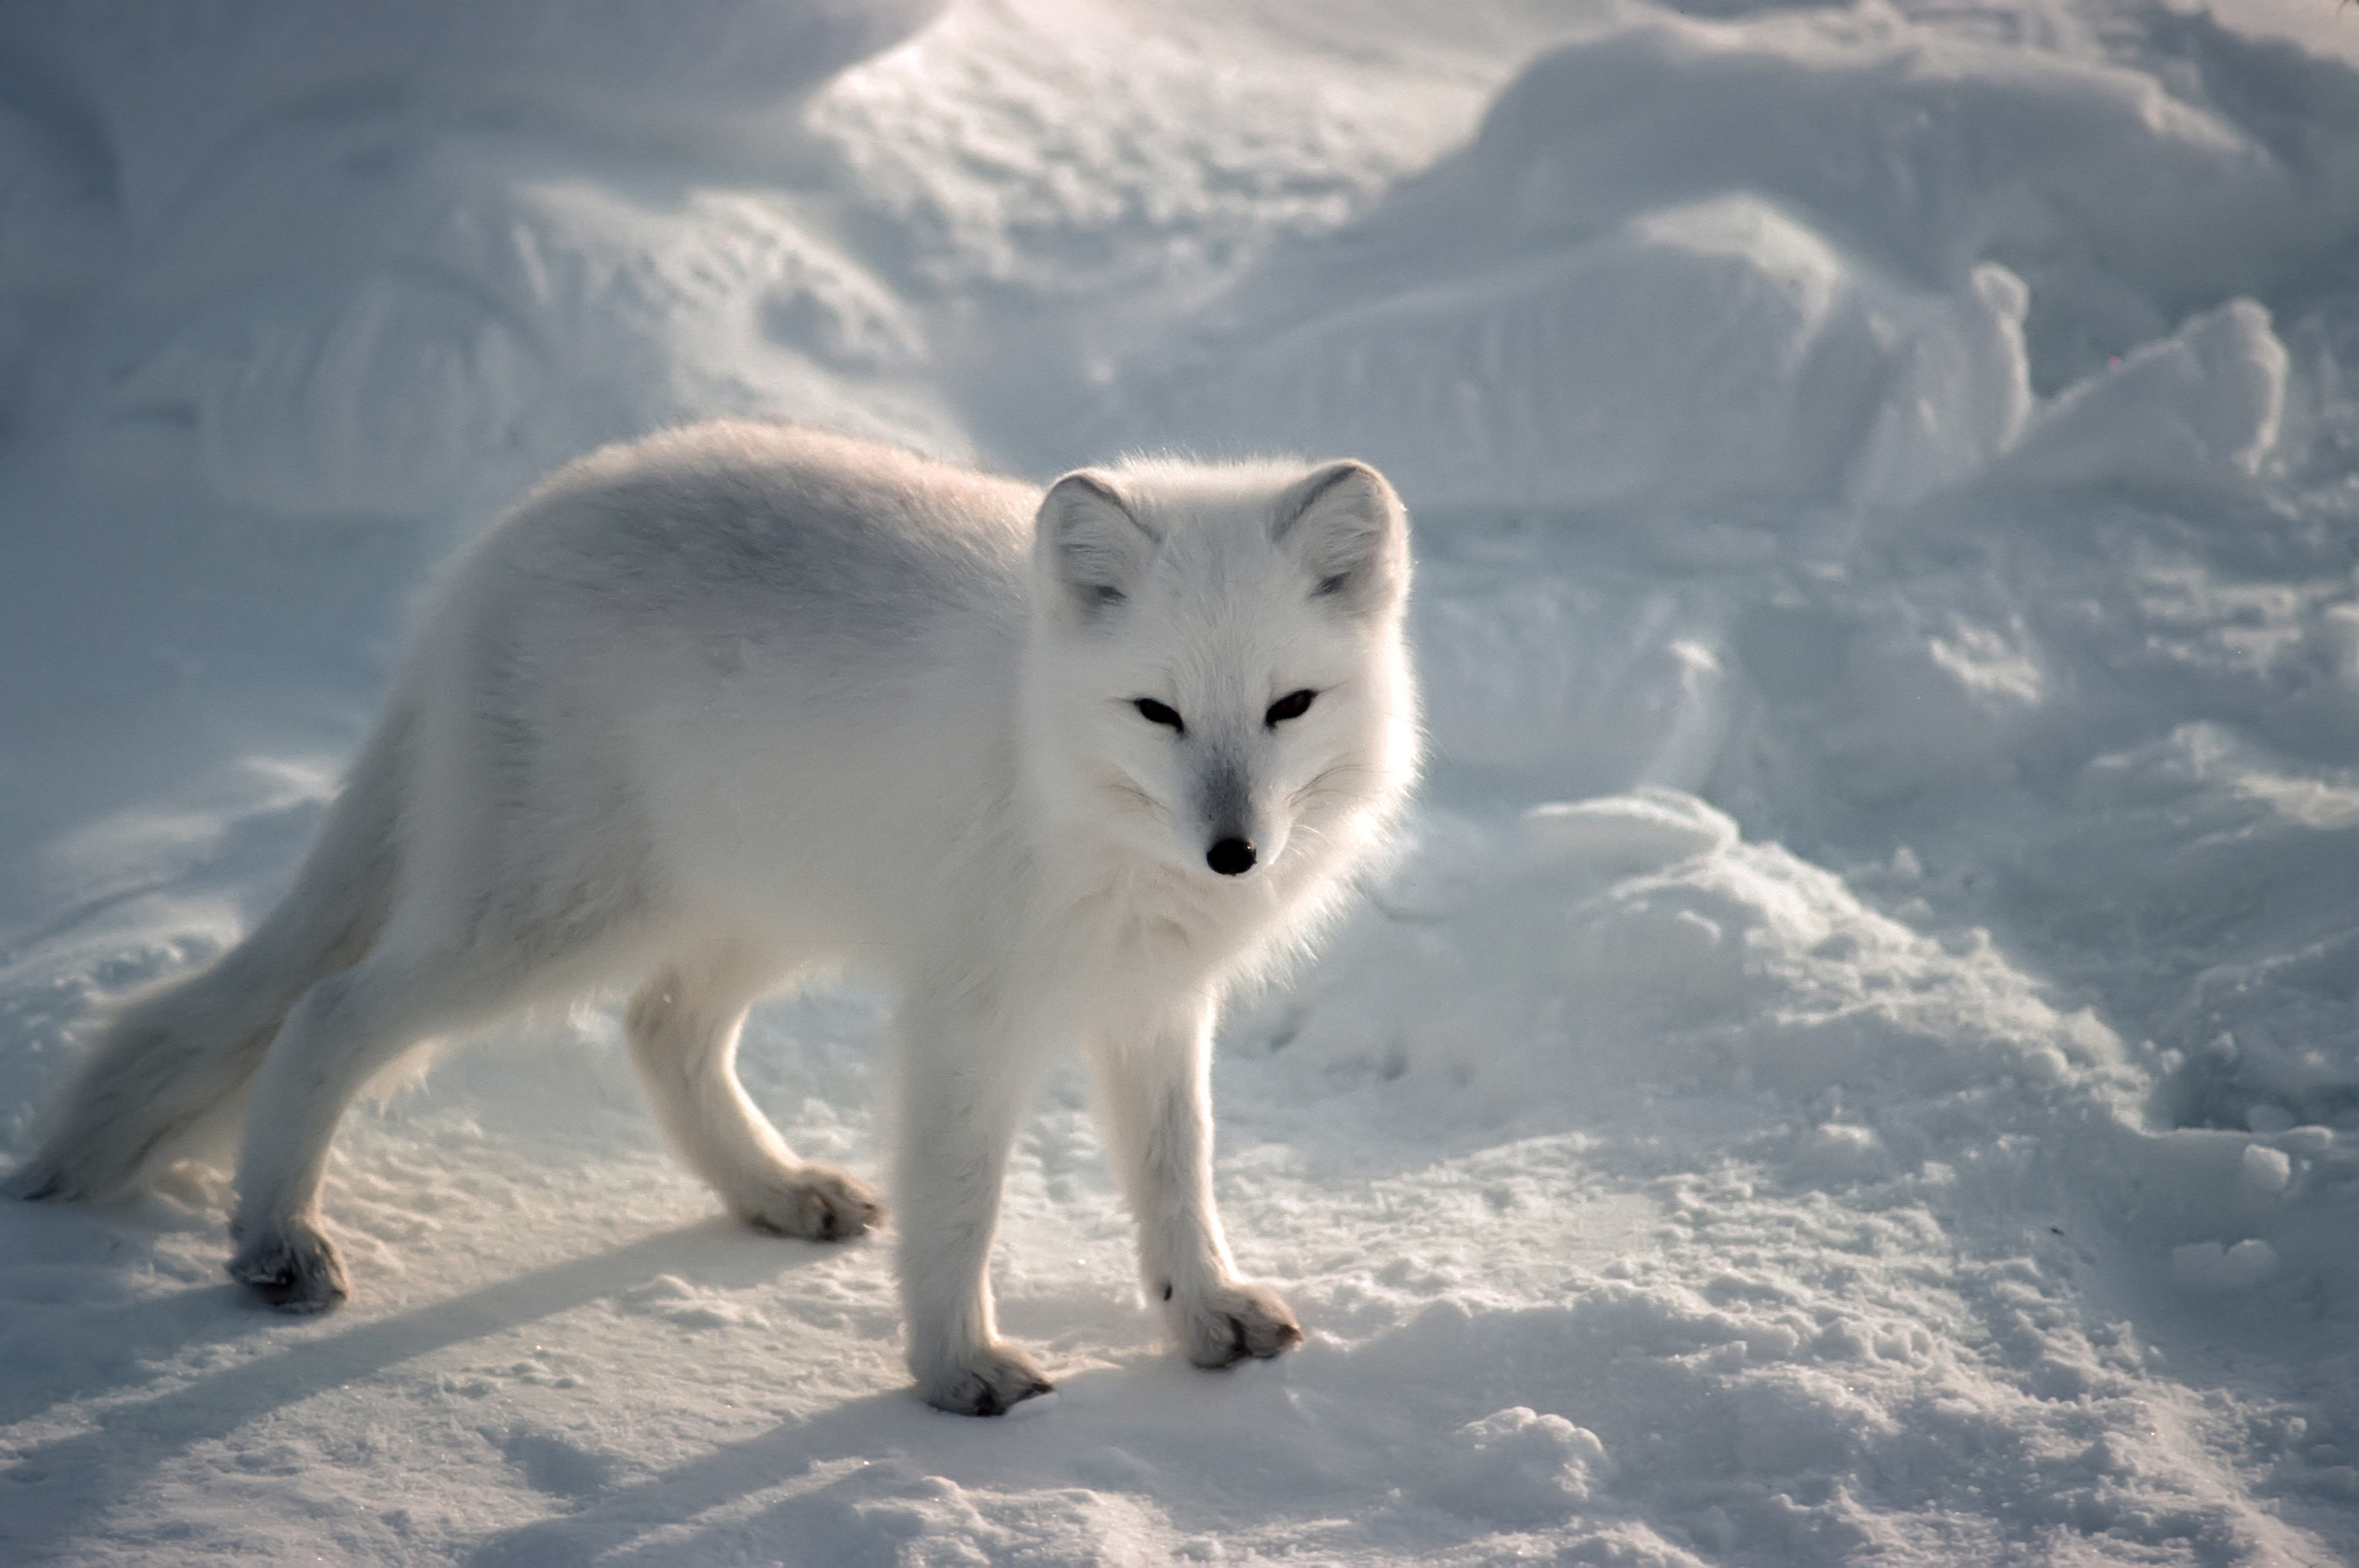 Arctic fox, HQ wallpapers, Wondrous nature, 4K visuals, 2750x1830 HD Desktop